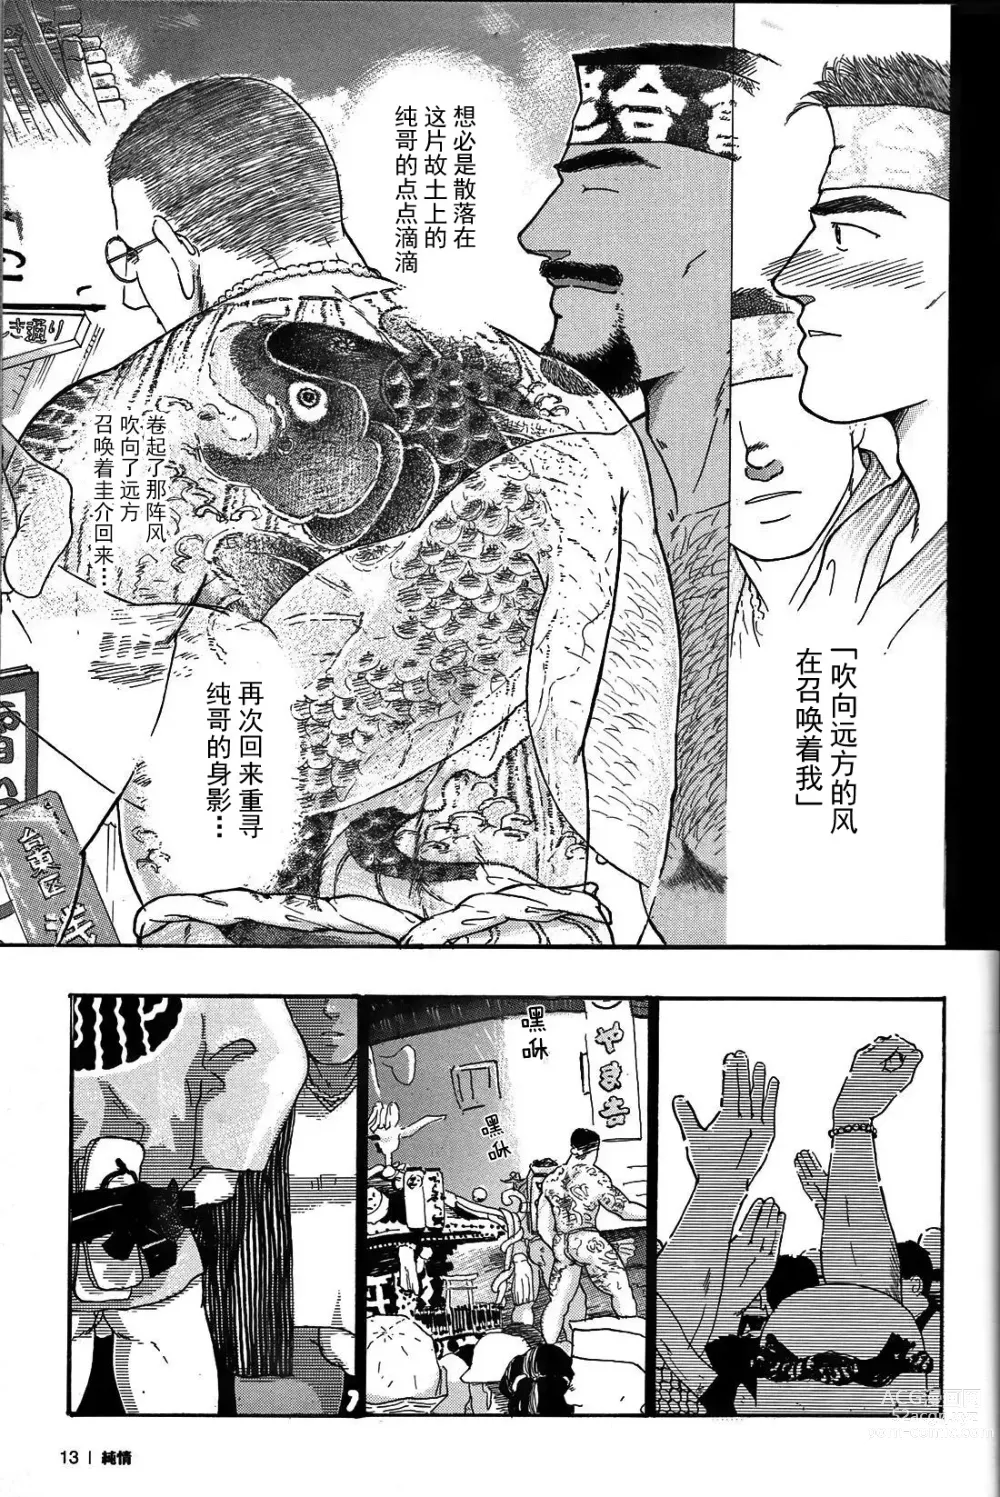 Page 12 of manga 纯情-第一章-纯情!!